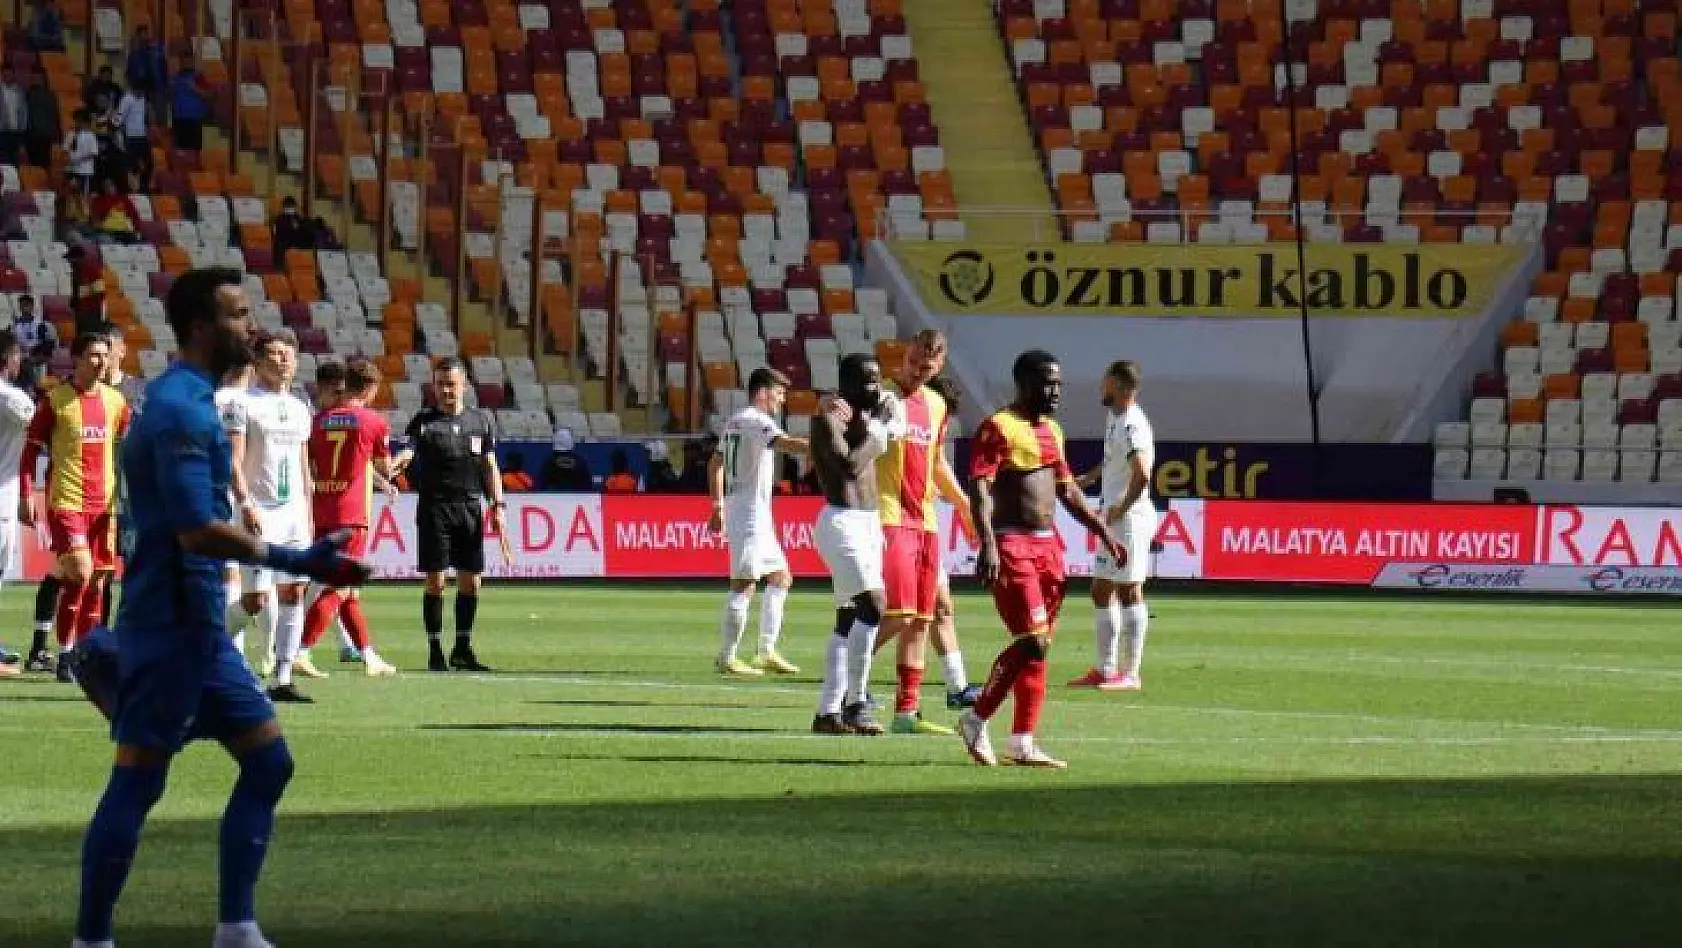 Spor Toto Süper Lig: Yeni Malatyaspor: 0 - GZT Giresunspor: 1 (Maç sonucu)